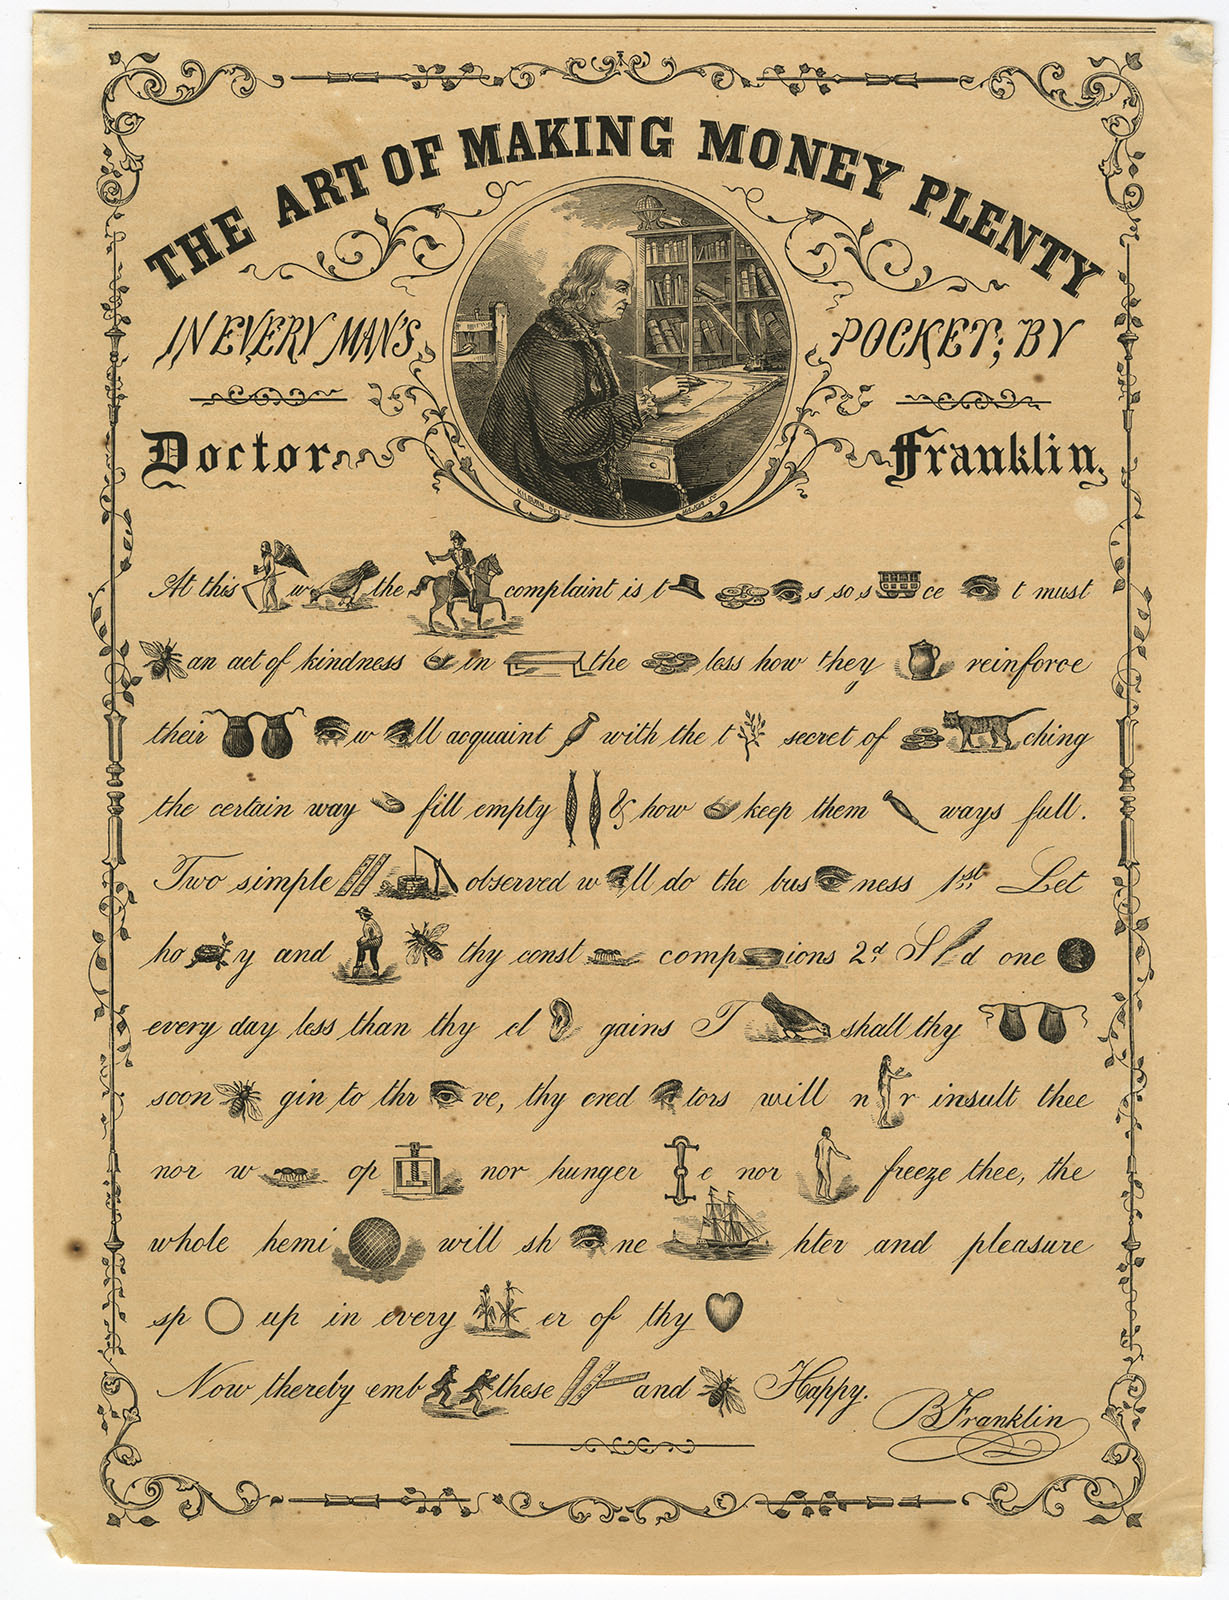 "The Art of Making Money Plenty," in Gleason's Pictorial, v. 6 (1854).